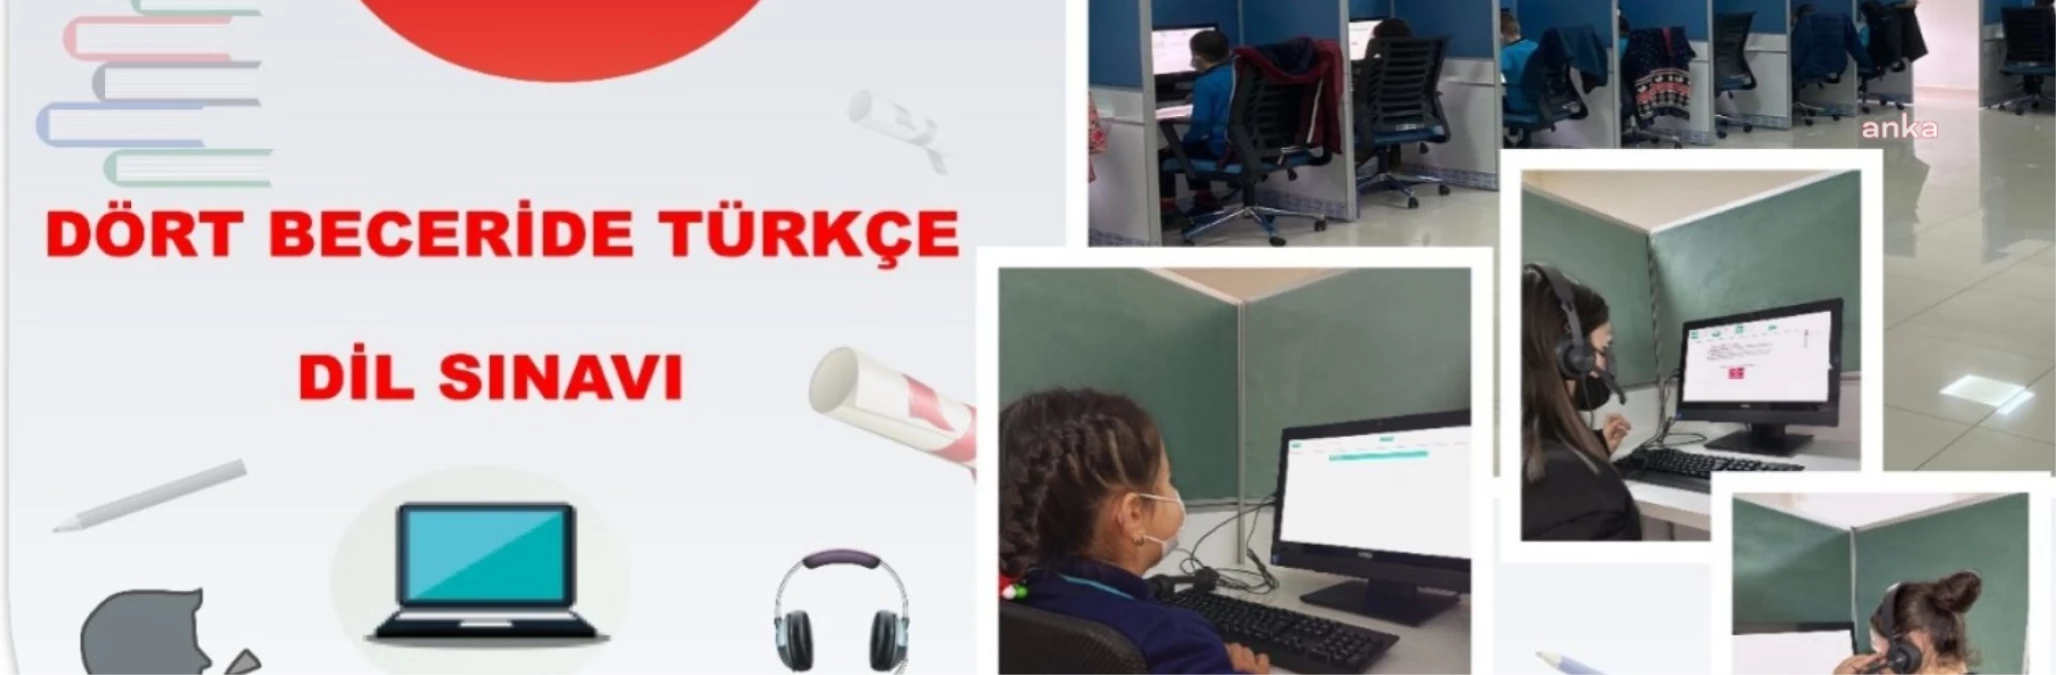 Milli Eğitim Bakanlığı, Dört Beceride Türkçe Dil Sınavı düzenleyecek